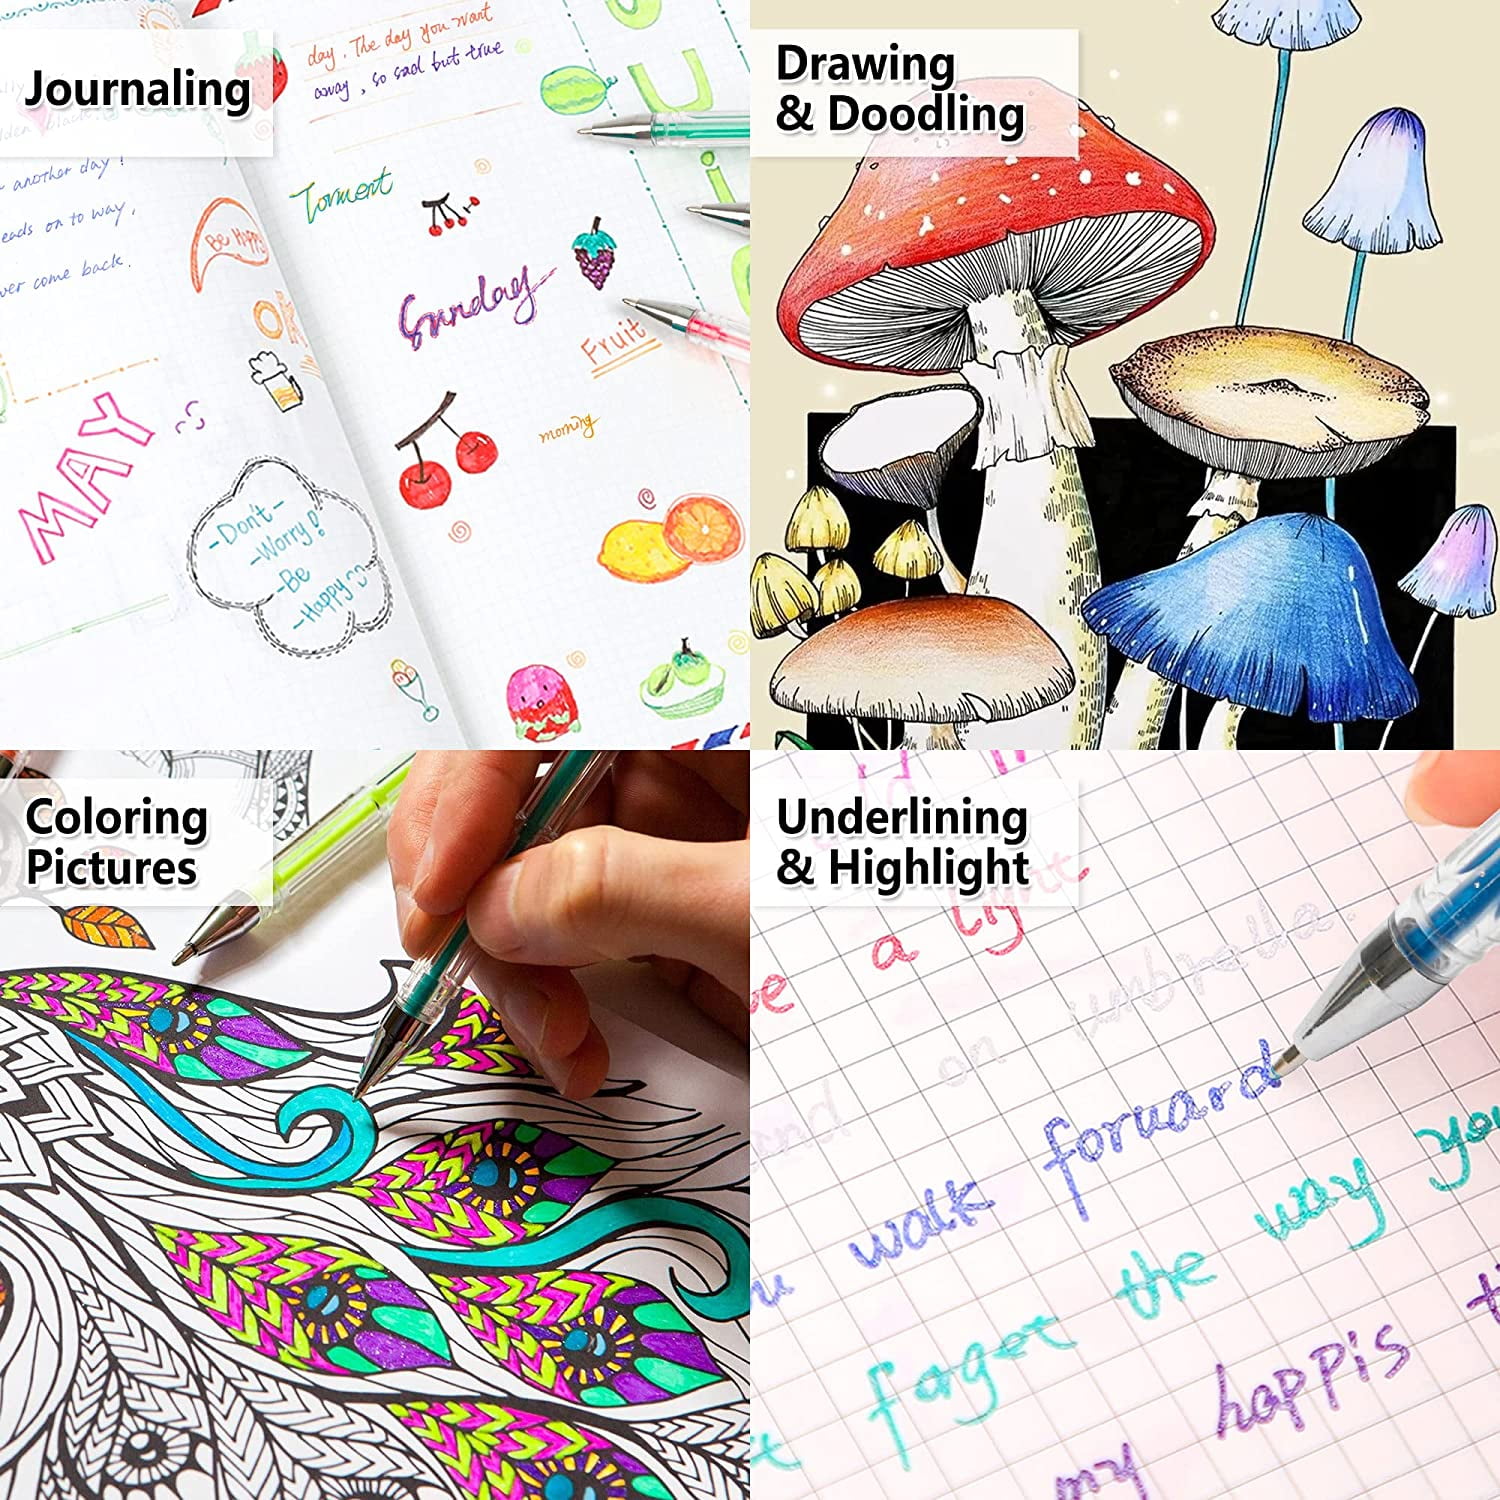 6 Gel Pens Gel Pastel Colors Pen Set Adults Kids Coloring Book Drawing  School, 1 - Fry's Food Stores